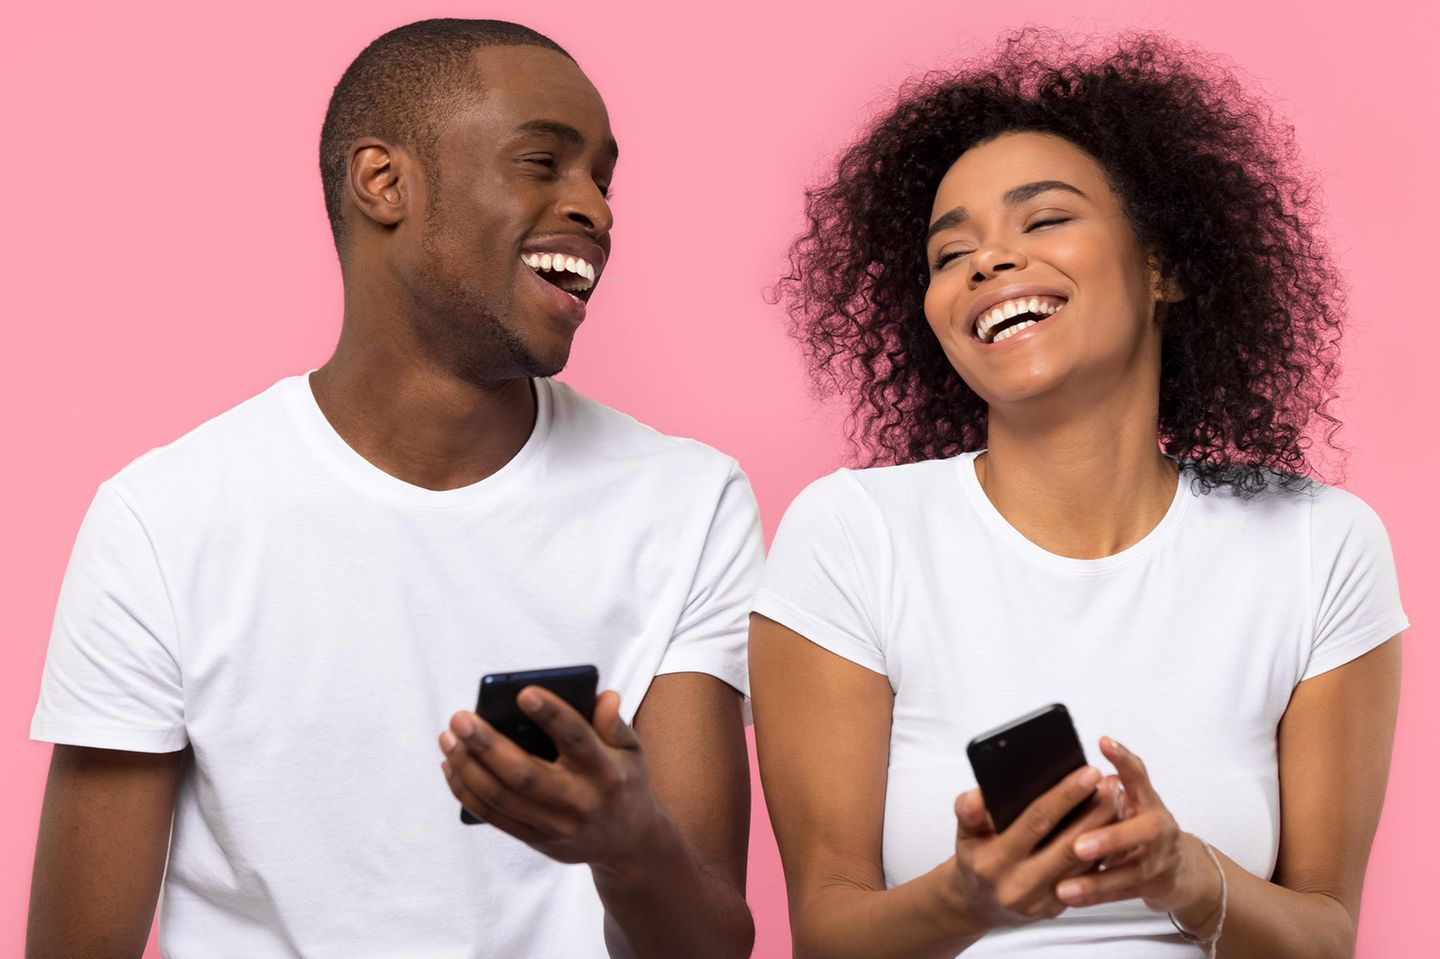 online dating app baden bei wien frauen auf der suche nach einem date dikrech